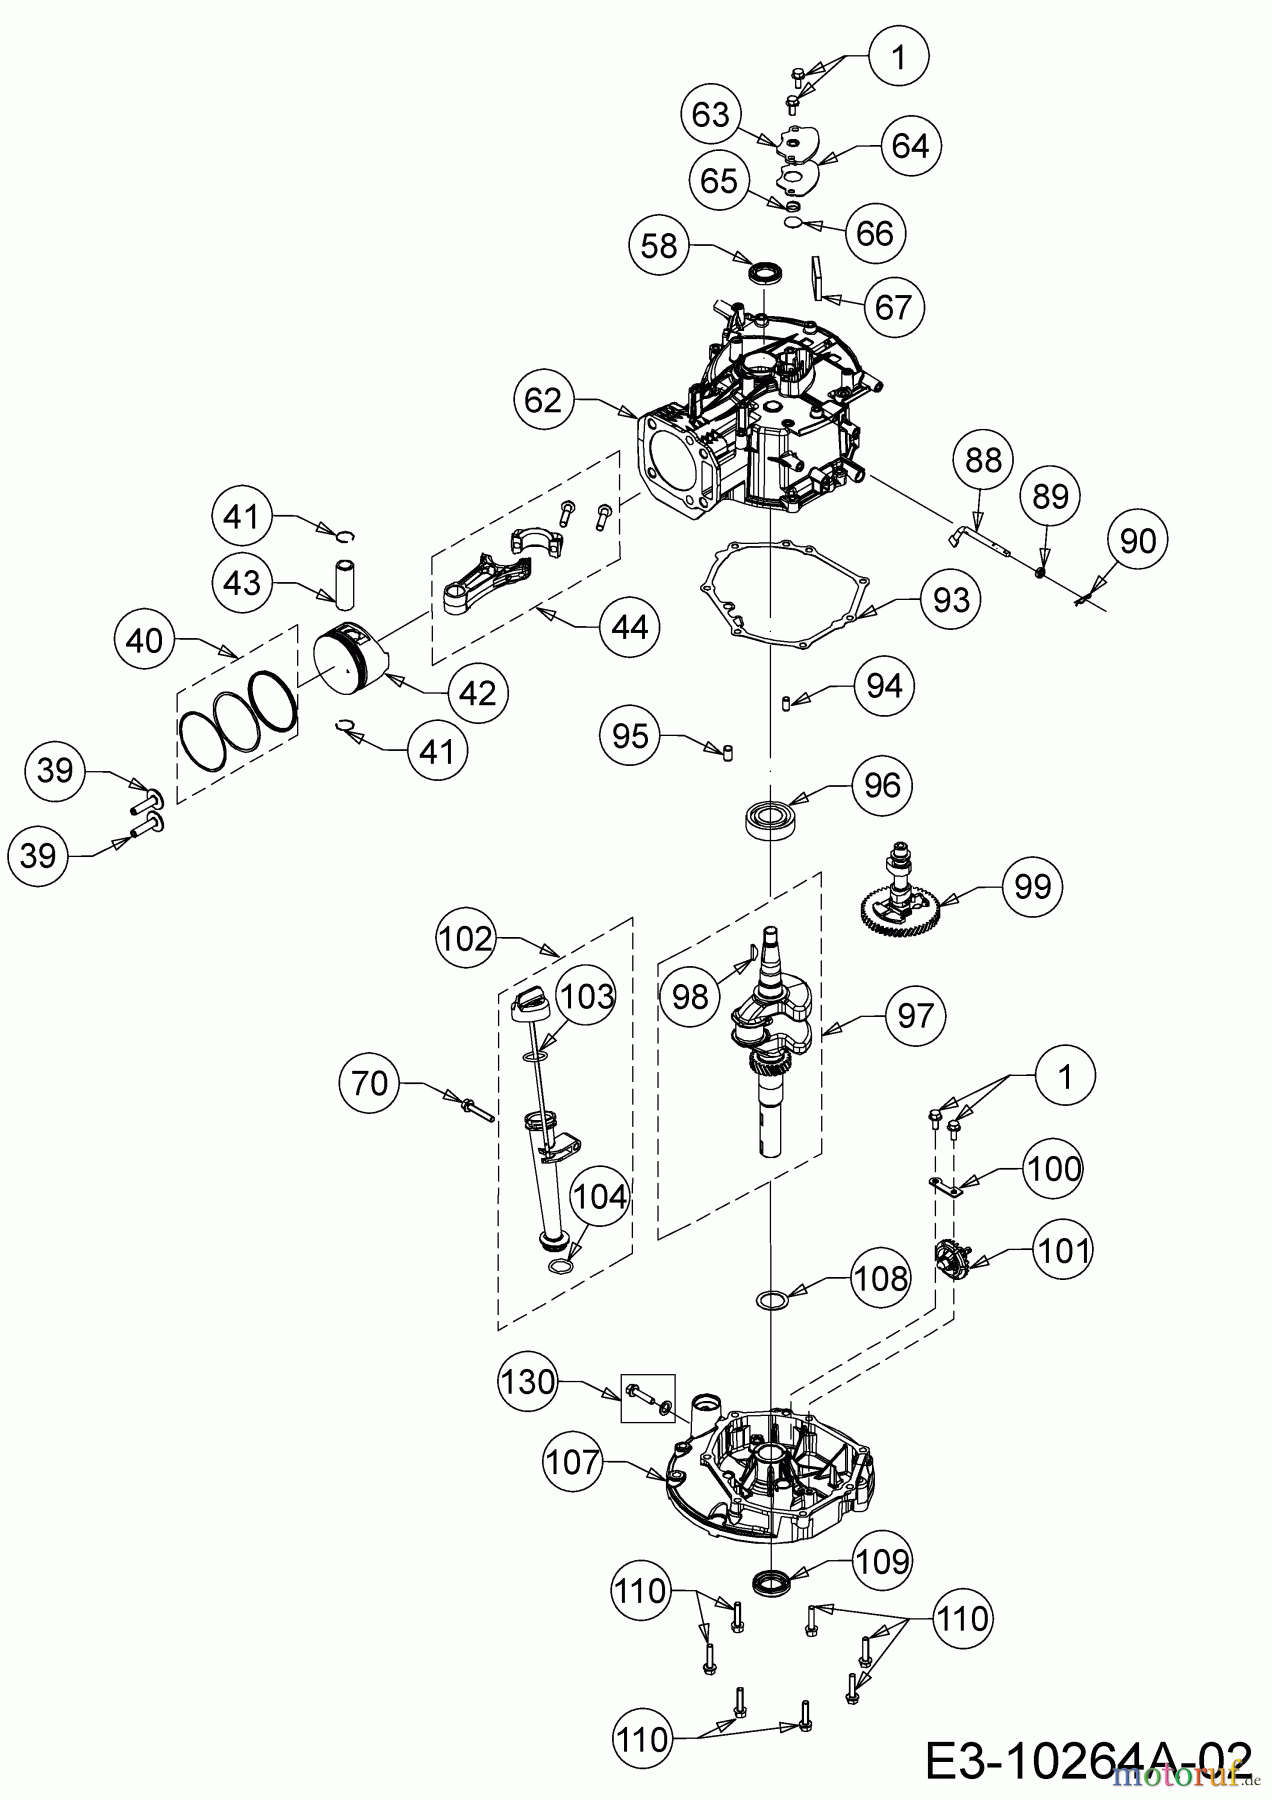  MTD-Motoren Vertikal 5X70RH 752Z5X70RH  (2017) Kolben, Kurbelwelle, Nockenwelle, Pleuel